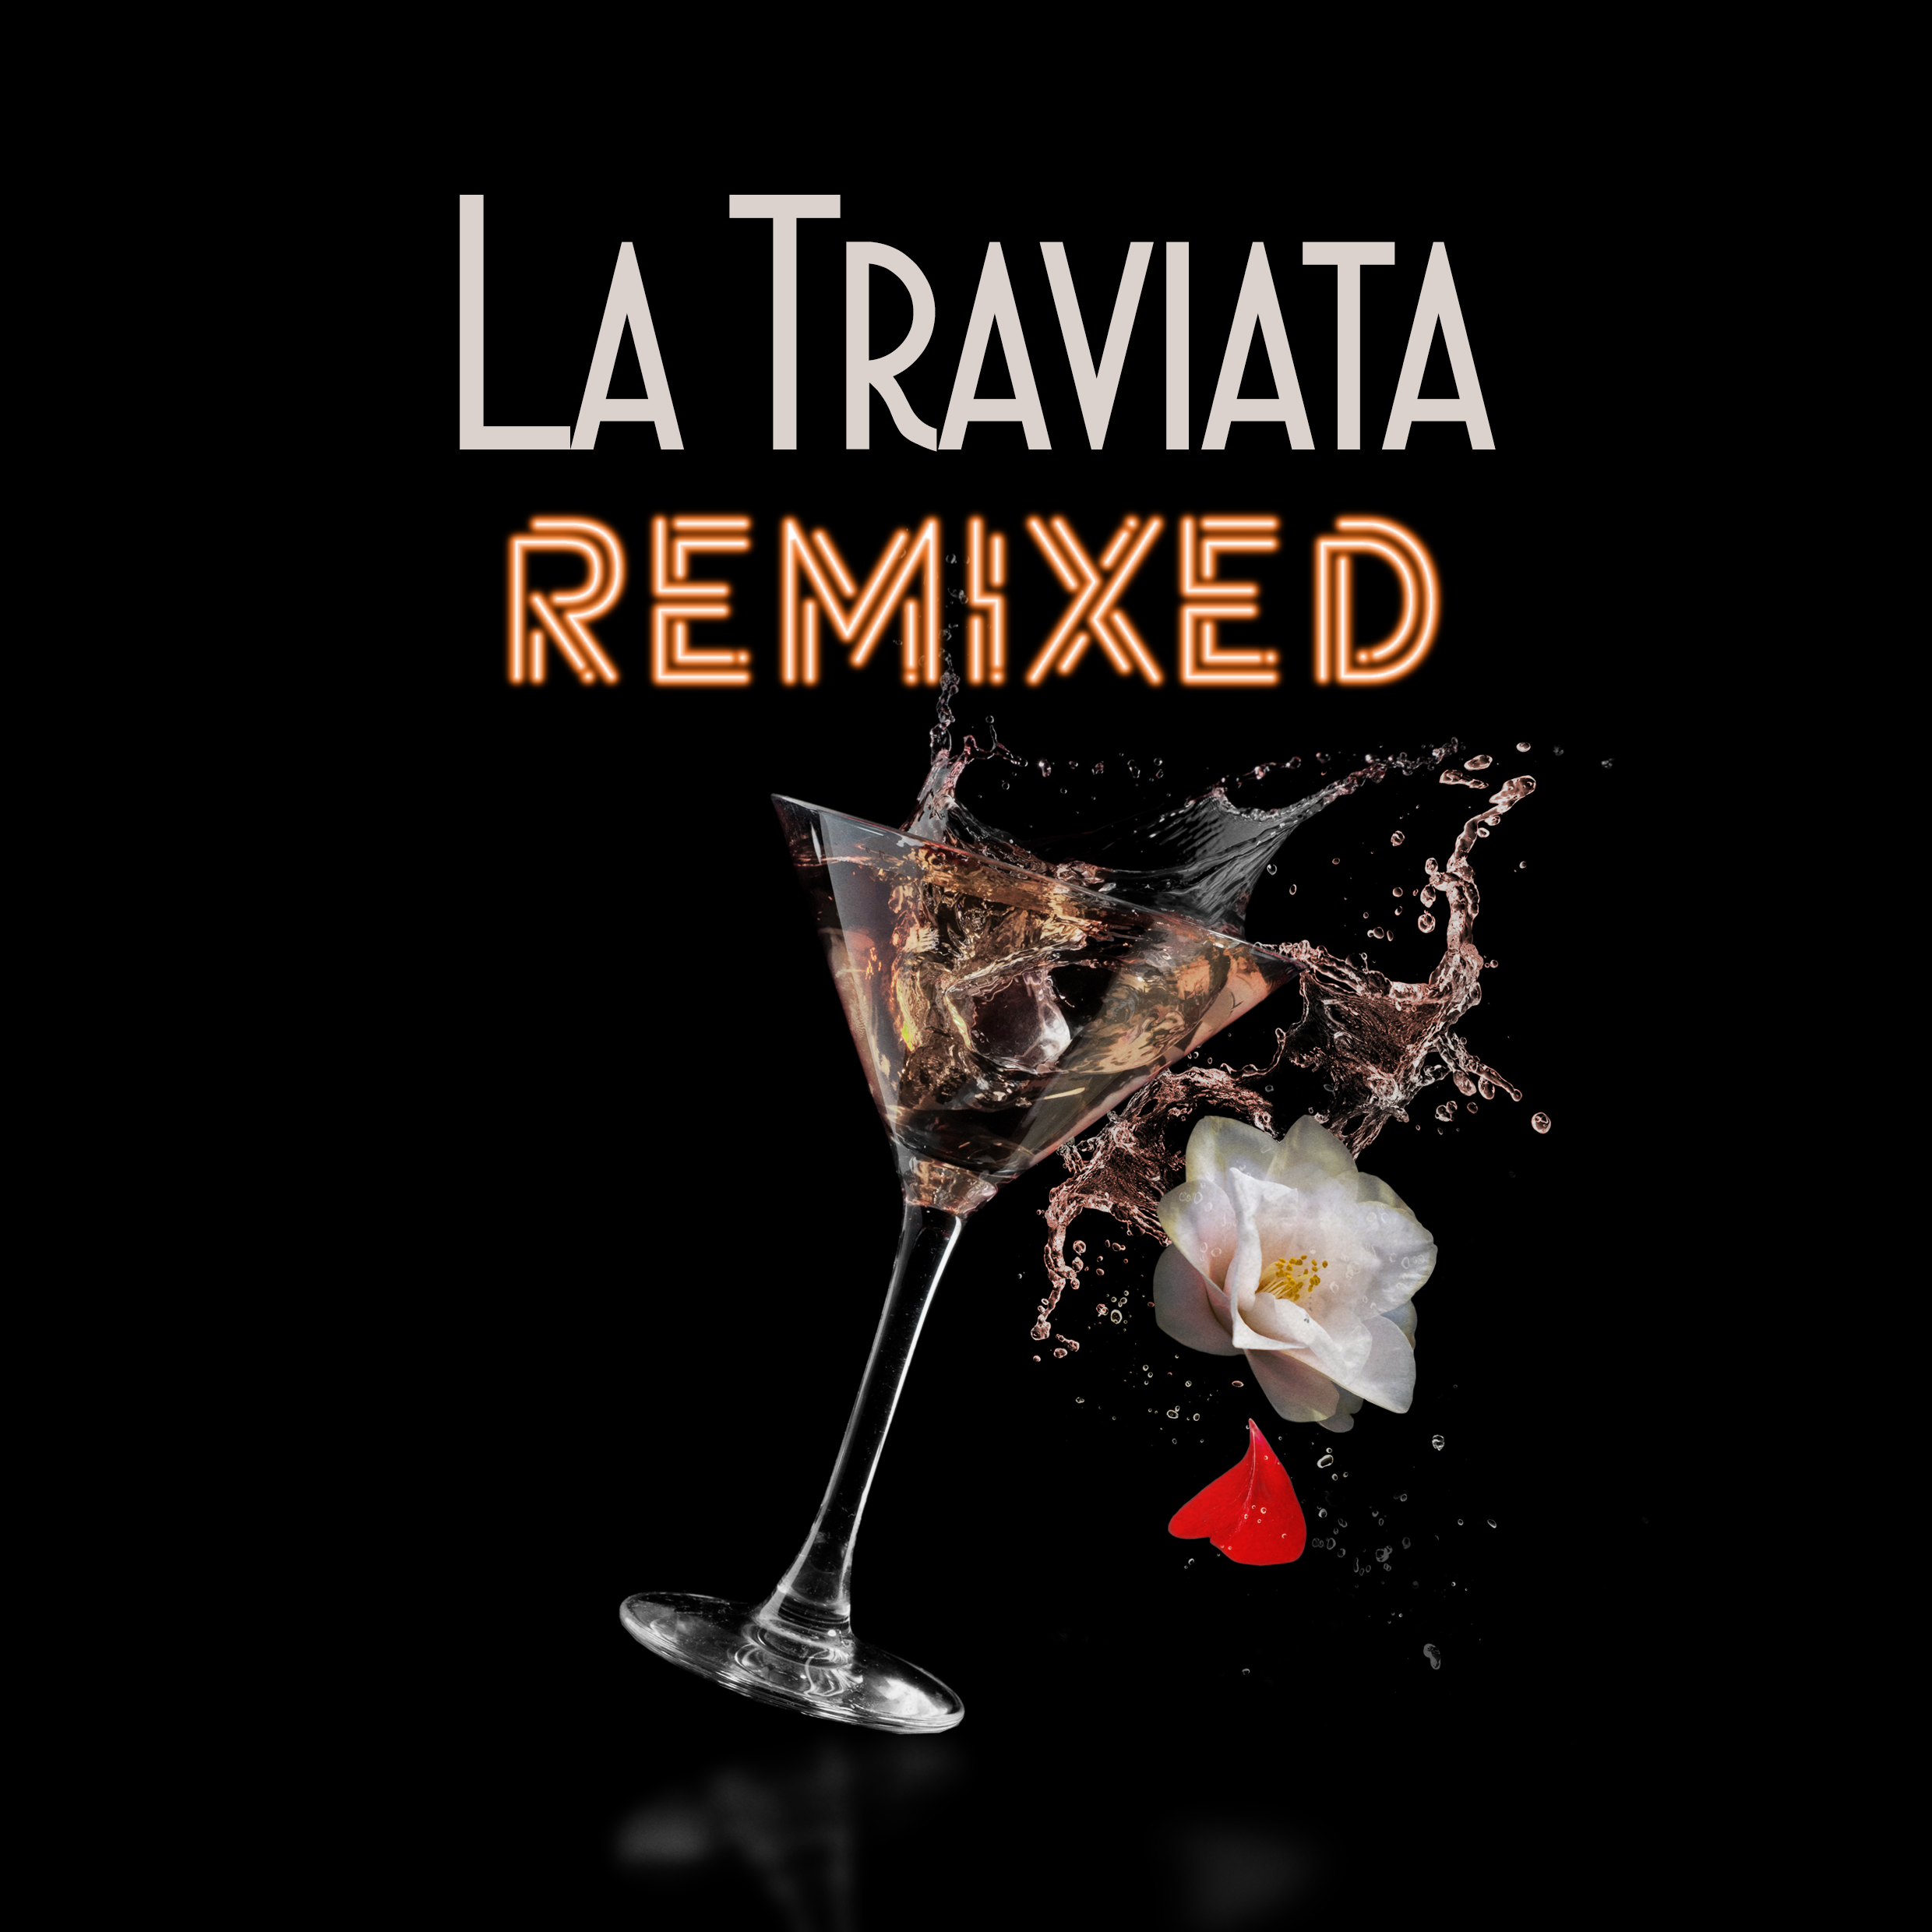 Motiv La Traviata Remixed - Grafikdesign: VERESdesign